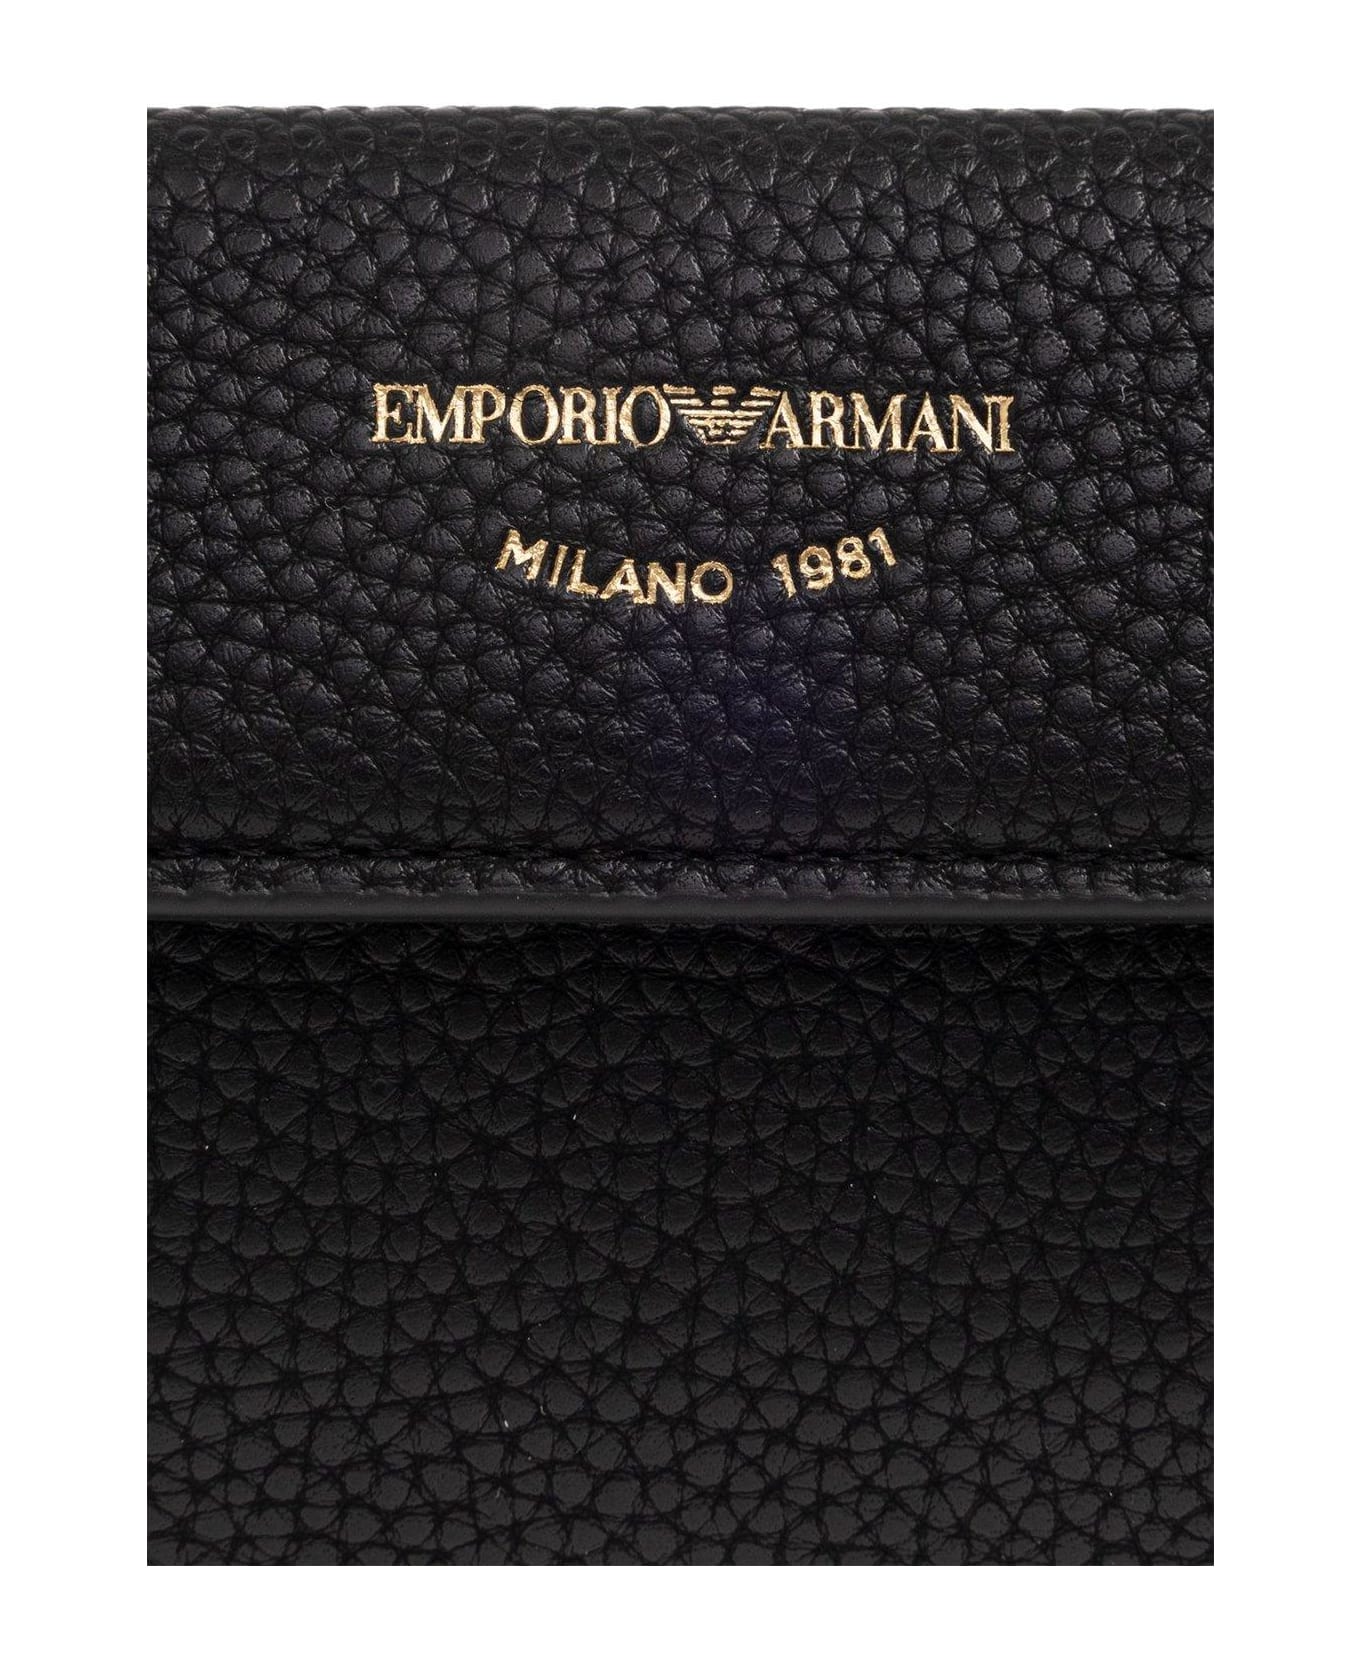 Emporio Armani Wallet With Logo - BLACK 財布